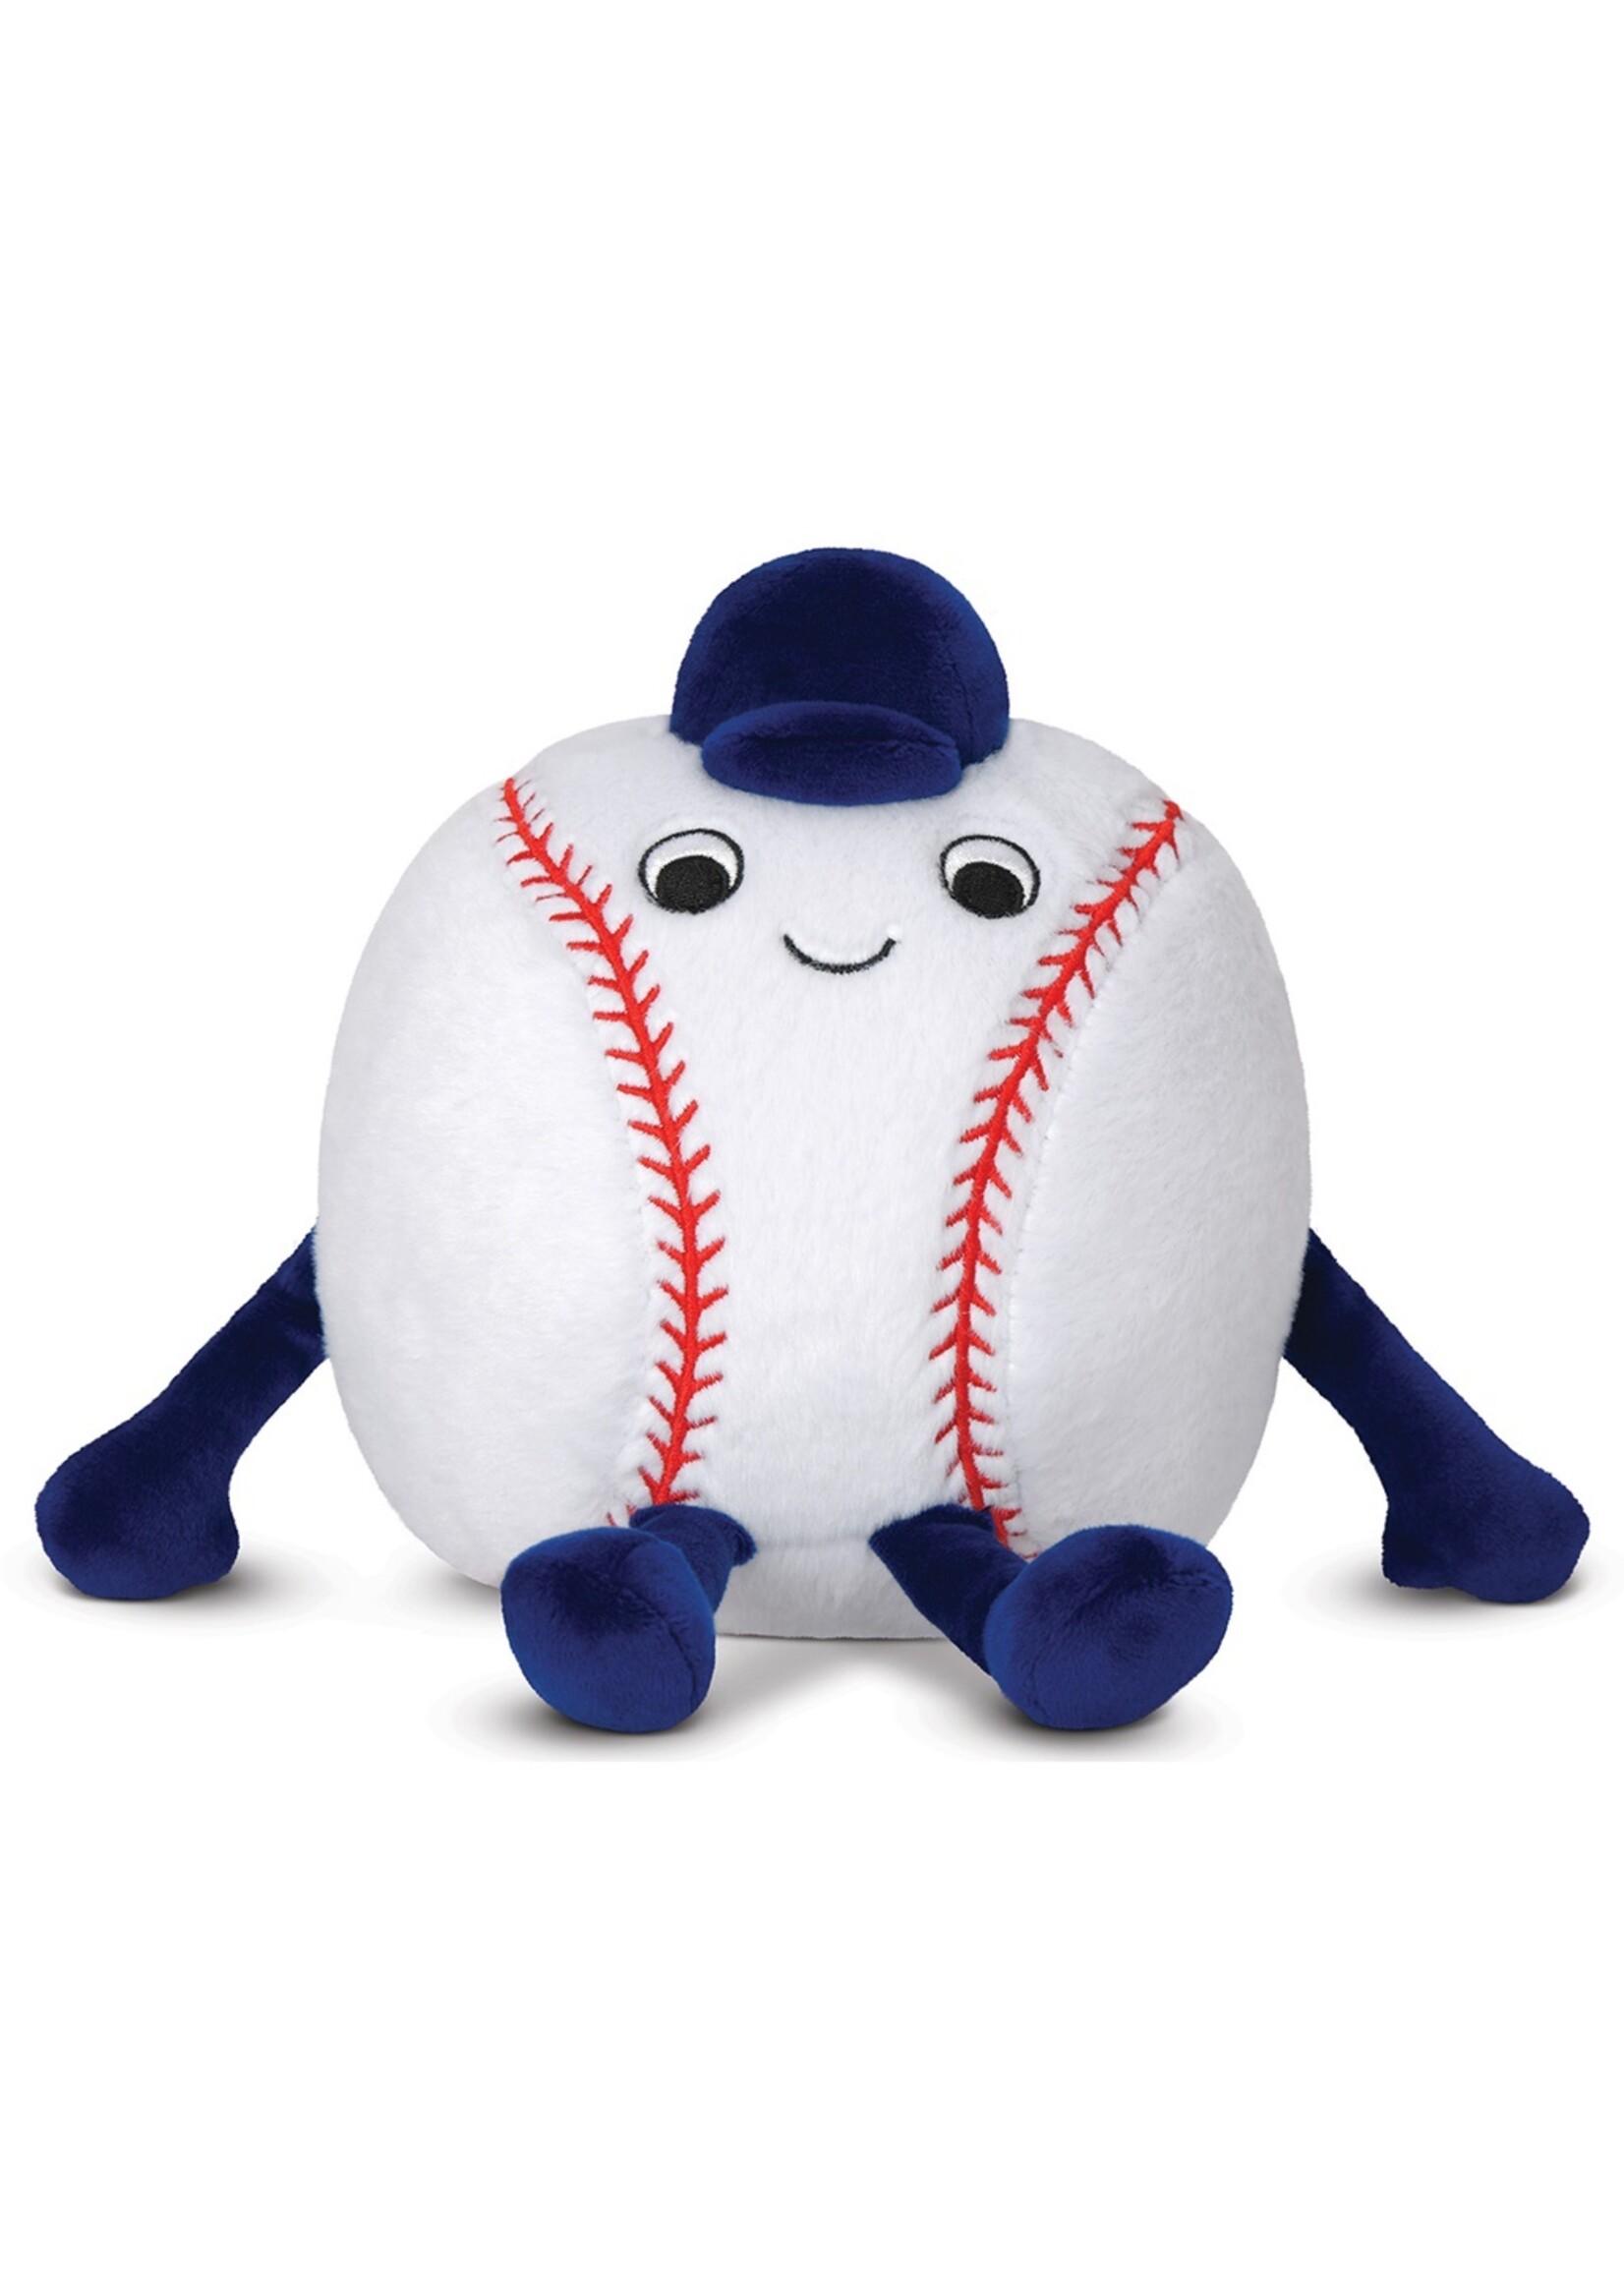 Iscream IScream Baseball Buddy Mini Plush